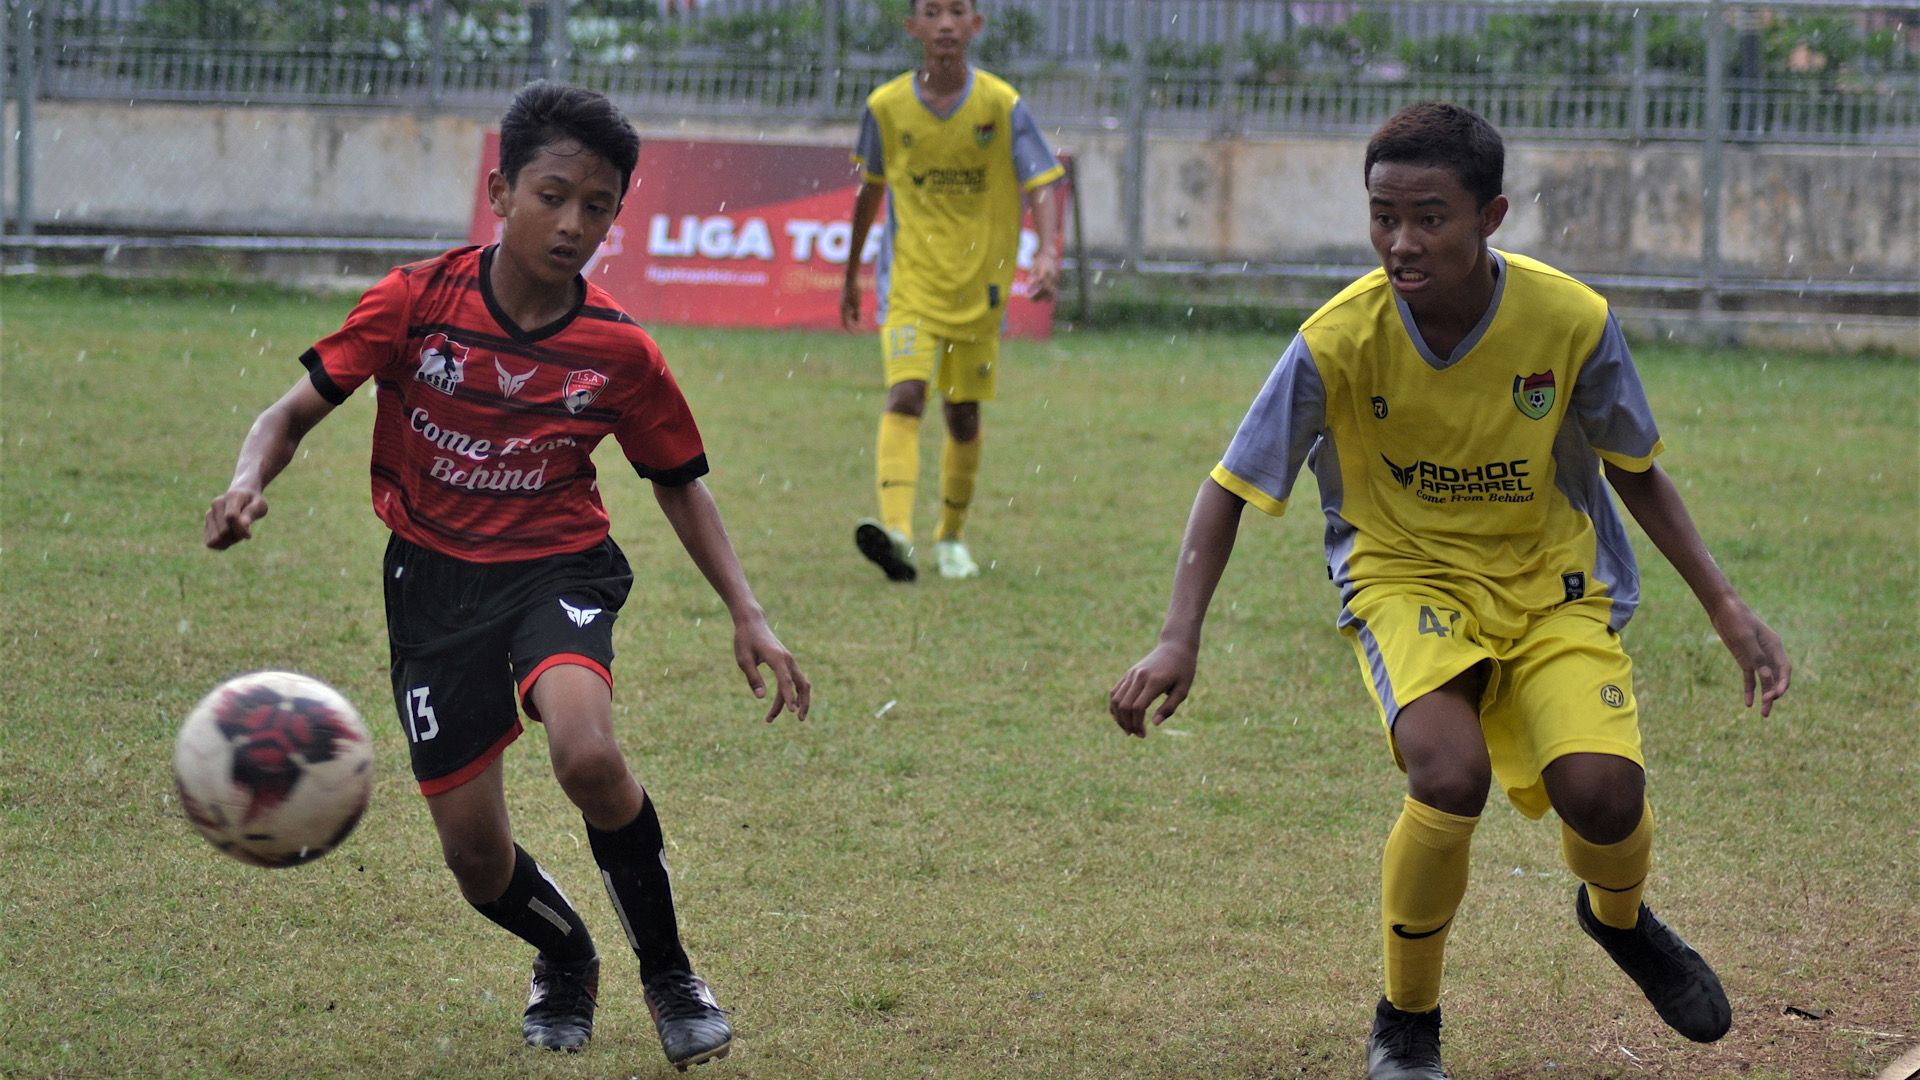 Pemain dari Imran Soccer Academy dan Cibinong Raya mengenakan jersey Adhoc Apparel pada final Liga TopSkor U-12 2020-2021.